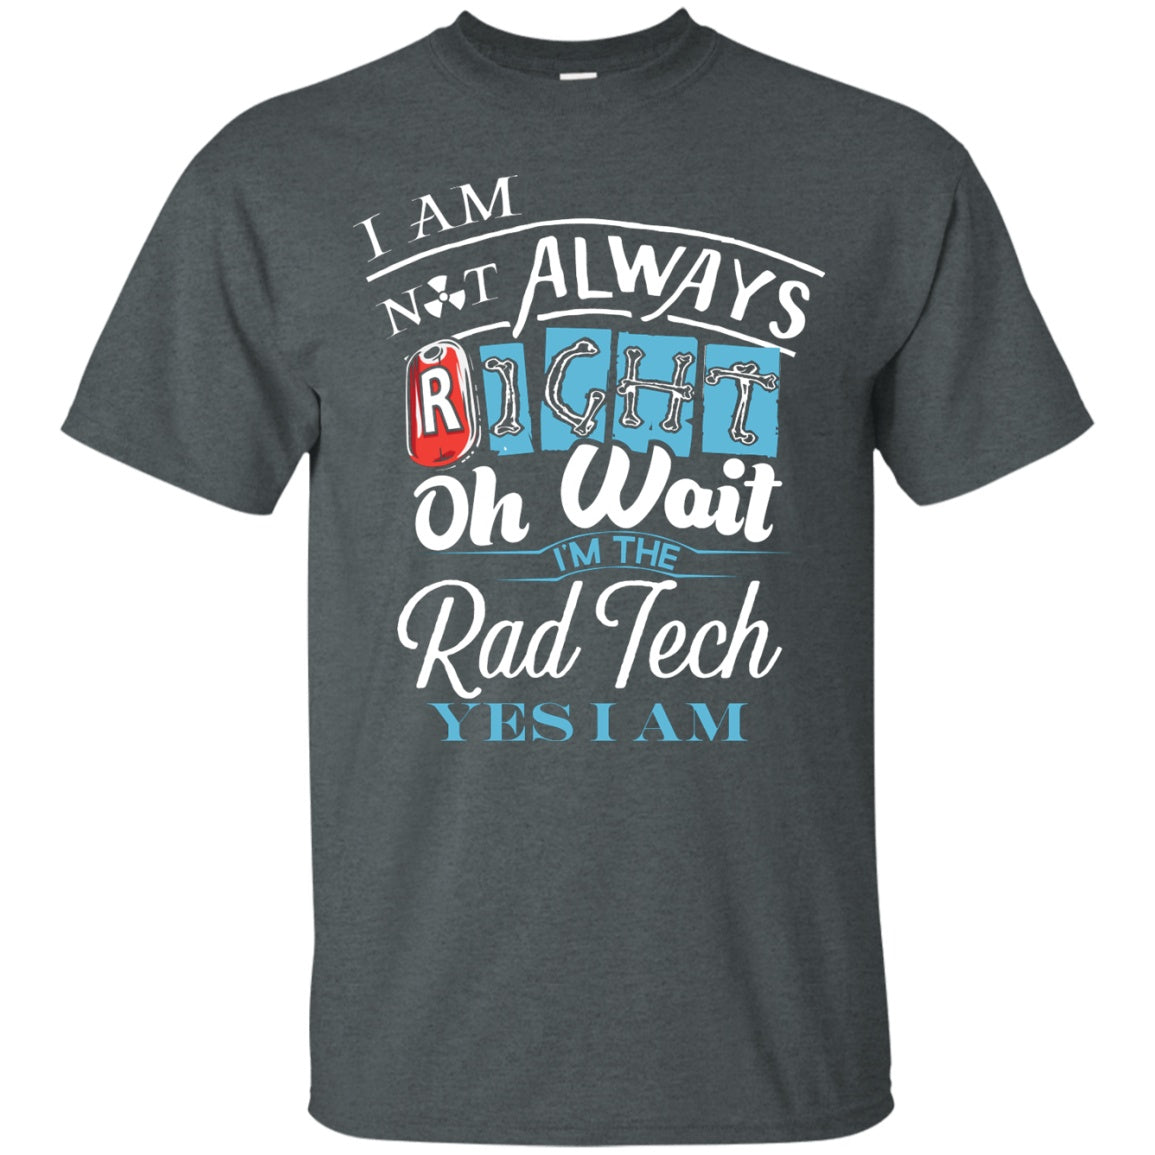 rad tech shirt